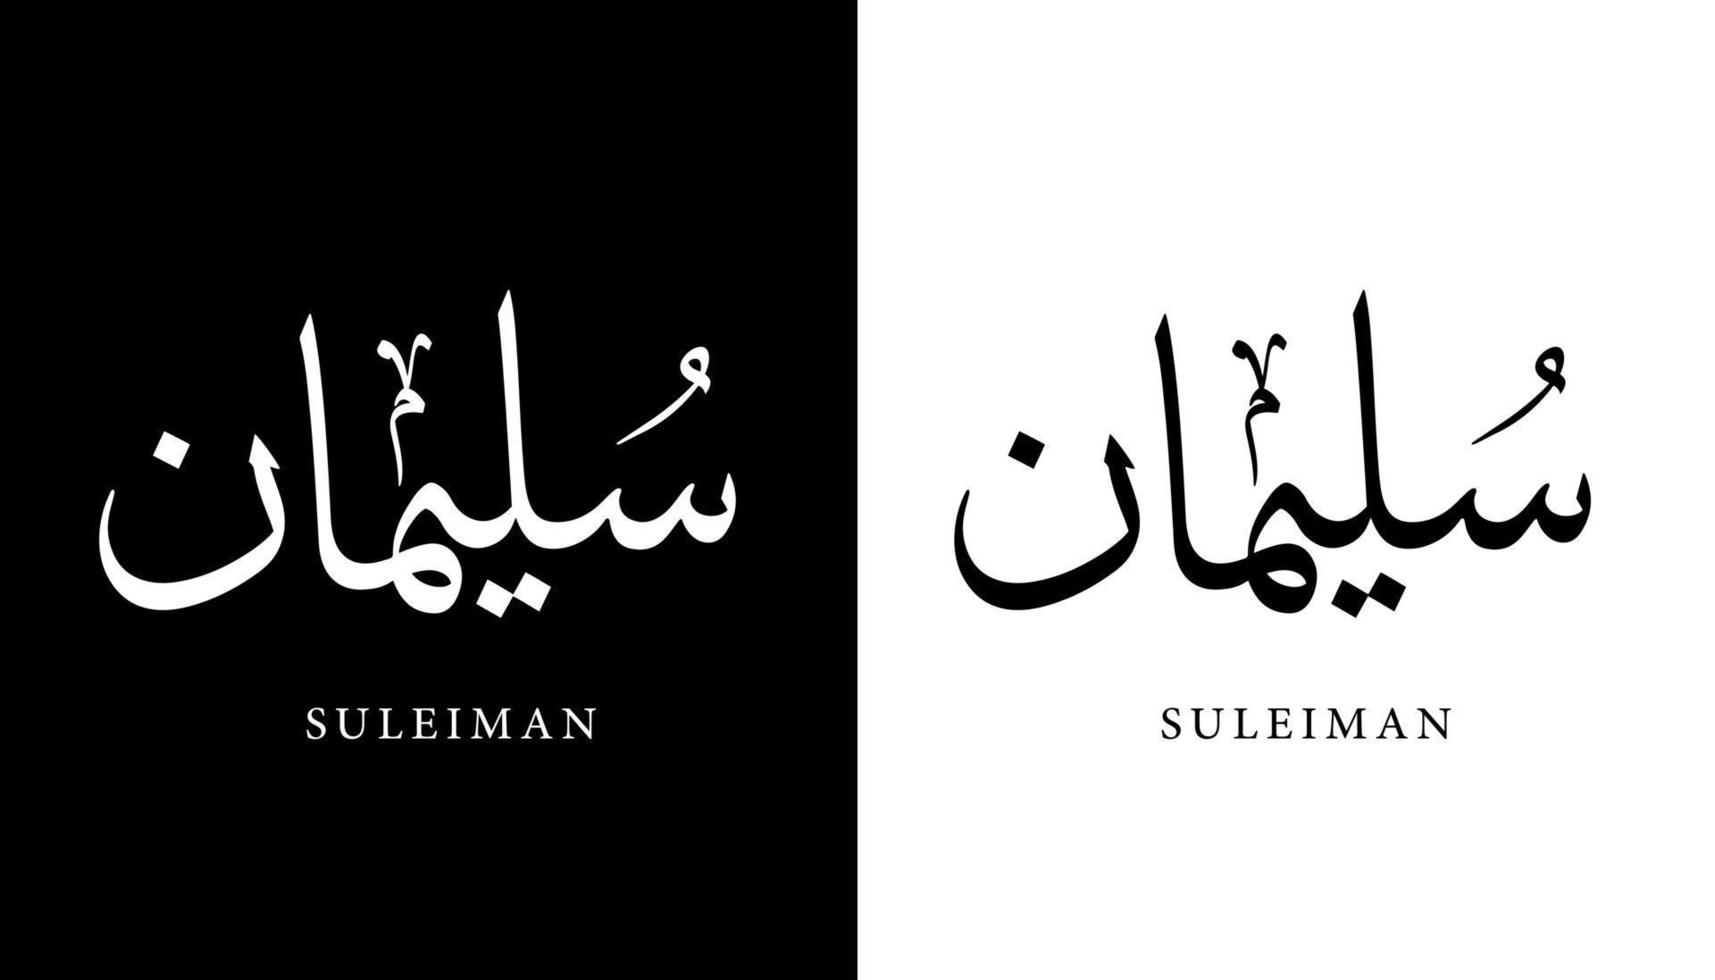 nombre de caligrafía árabe traducido 'suleiman' letras árabes alfabeto fuente letras islámicas logo vector ilustración